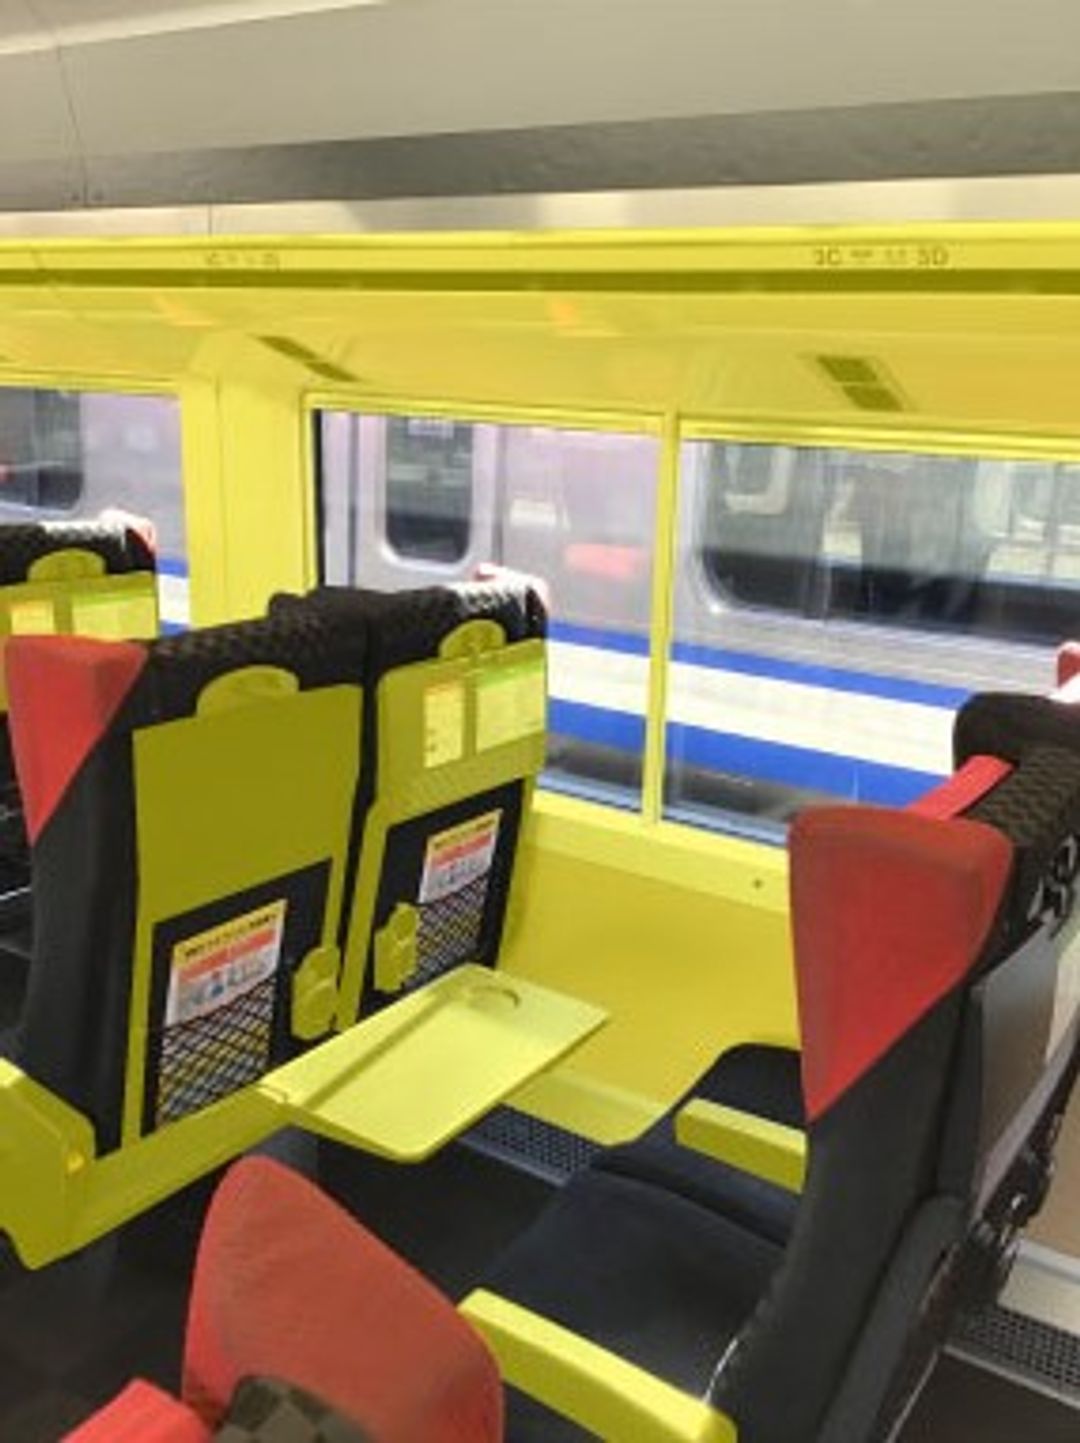 &nbsp; 新幹線・特快列車乘客車廂內的消毒位置　※消毒位置為相片中黃色標示部份&nbsp;&nbsp;